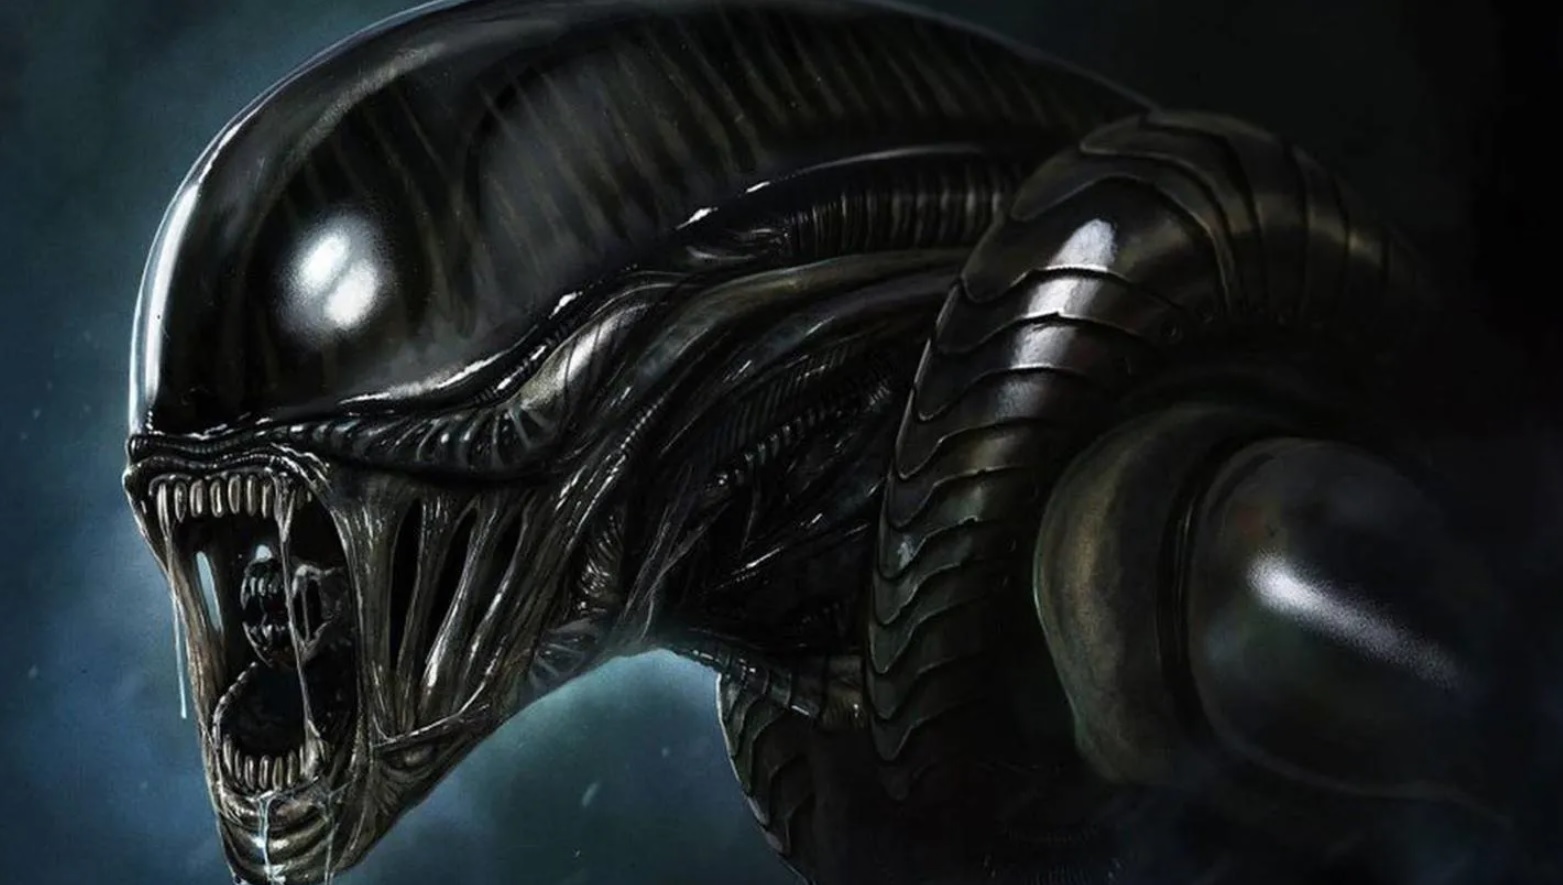 Alien: todos los detalles de la proxima pelicula dirigida por el cineasta uruguayo Fede Álvarez